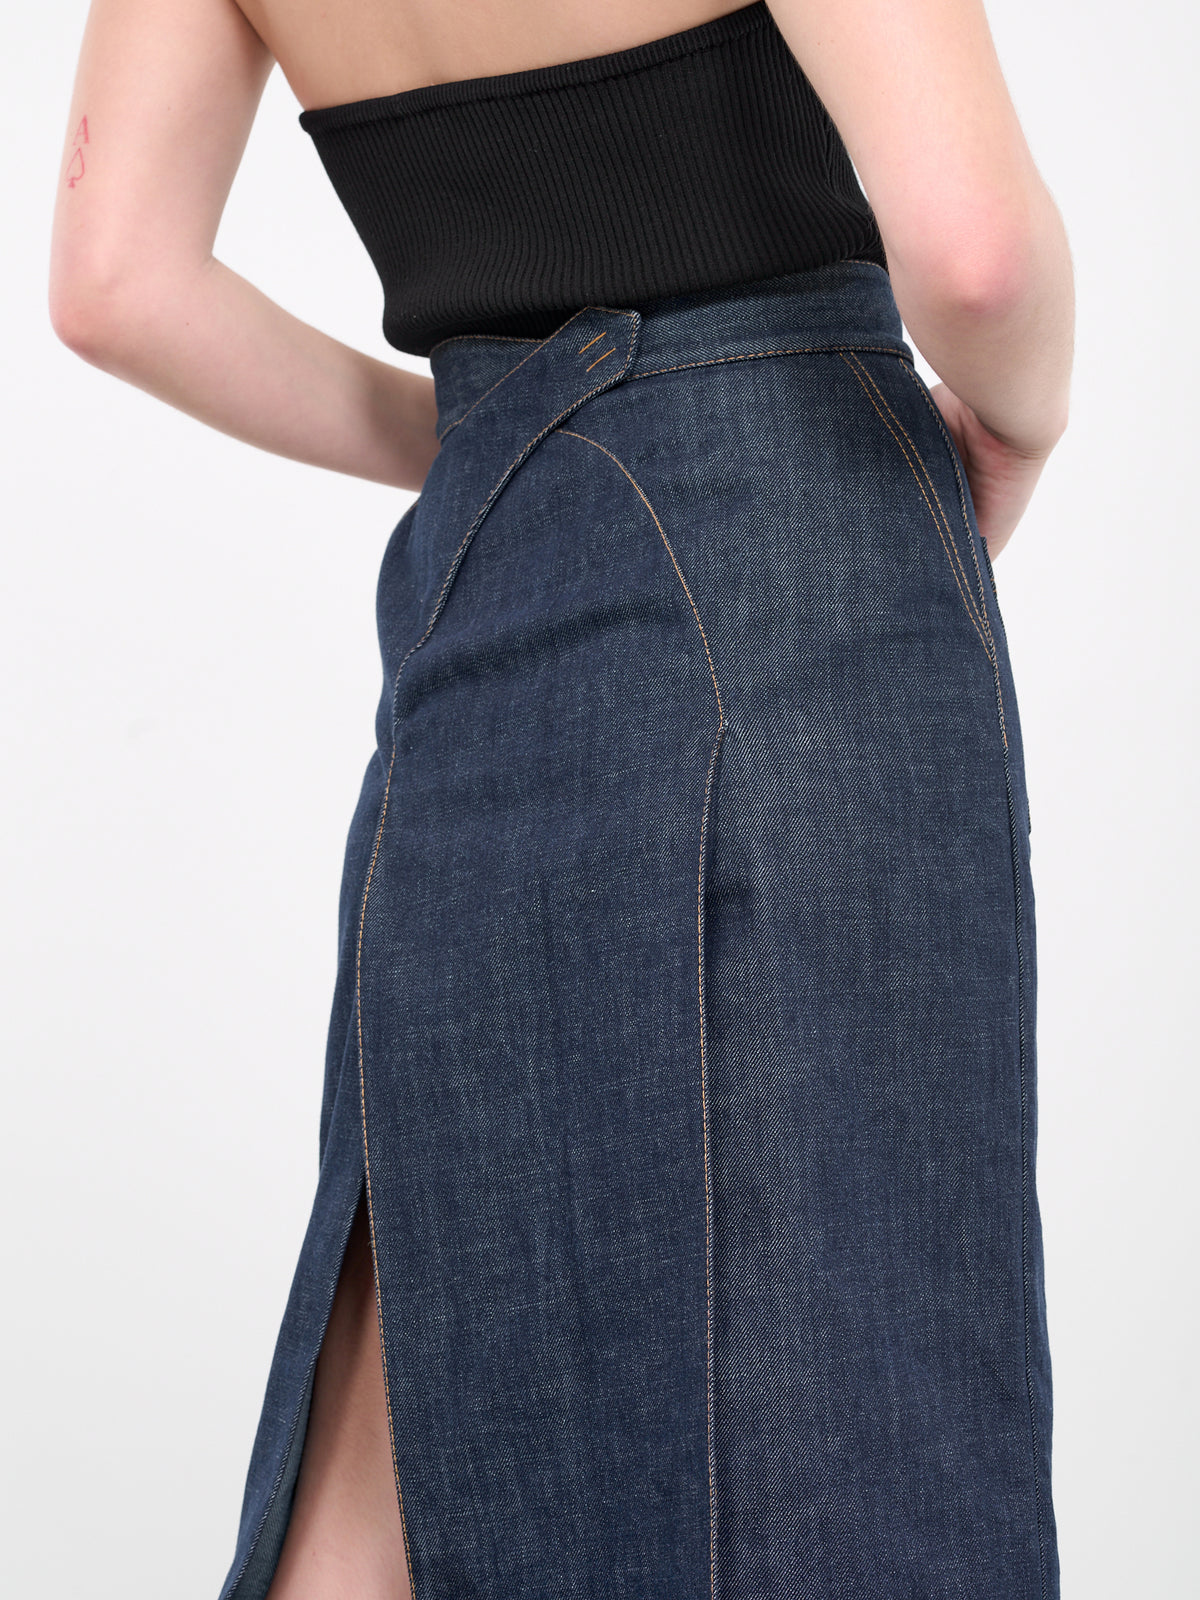 Denim Skirt (UN-SKI-01-BLUE)